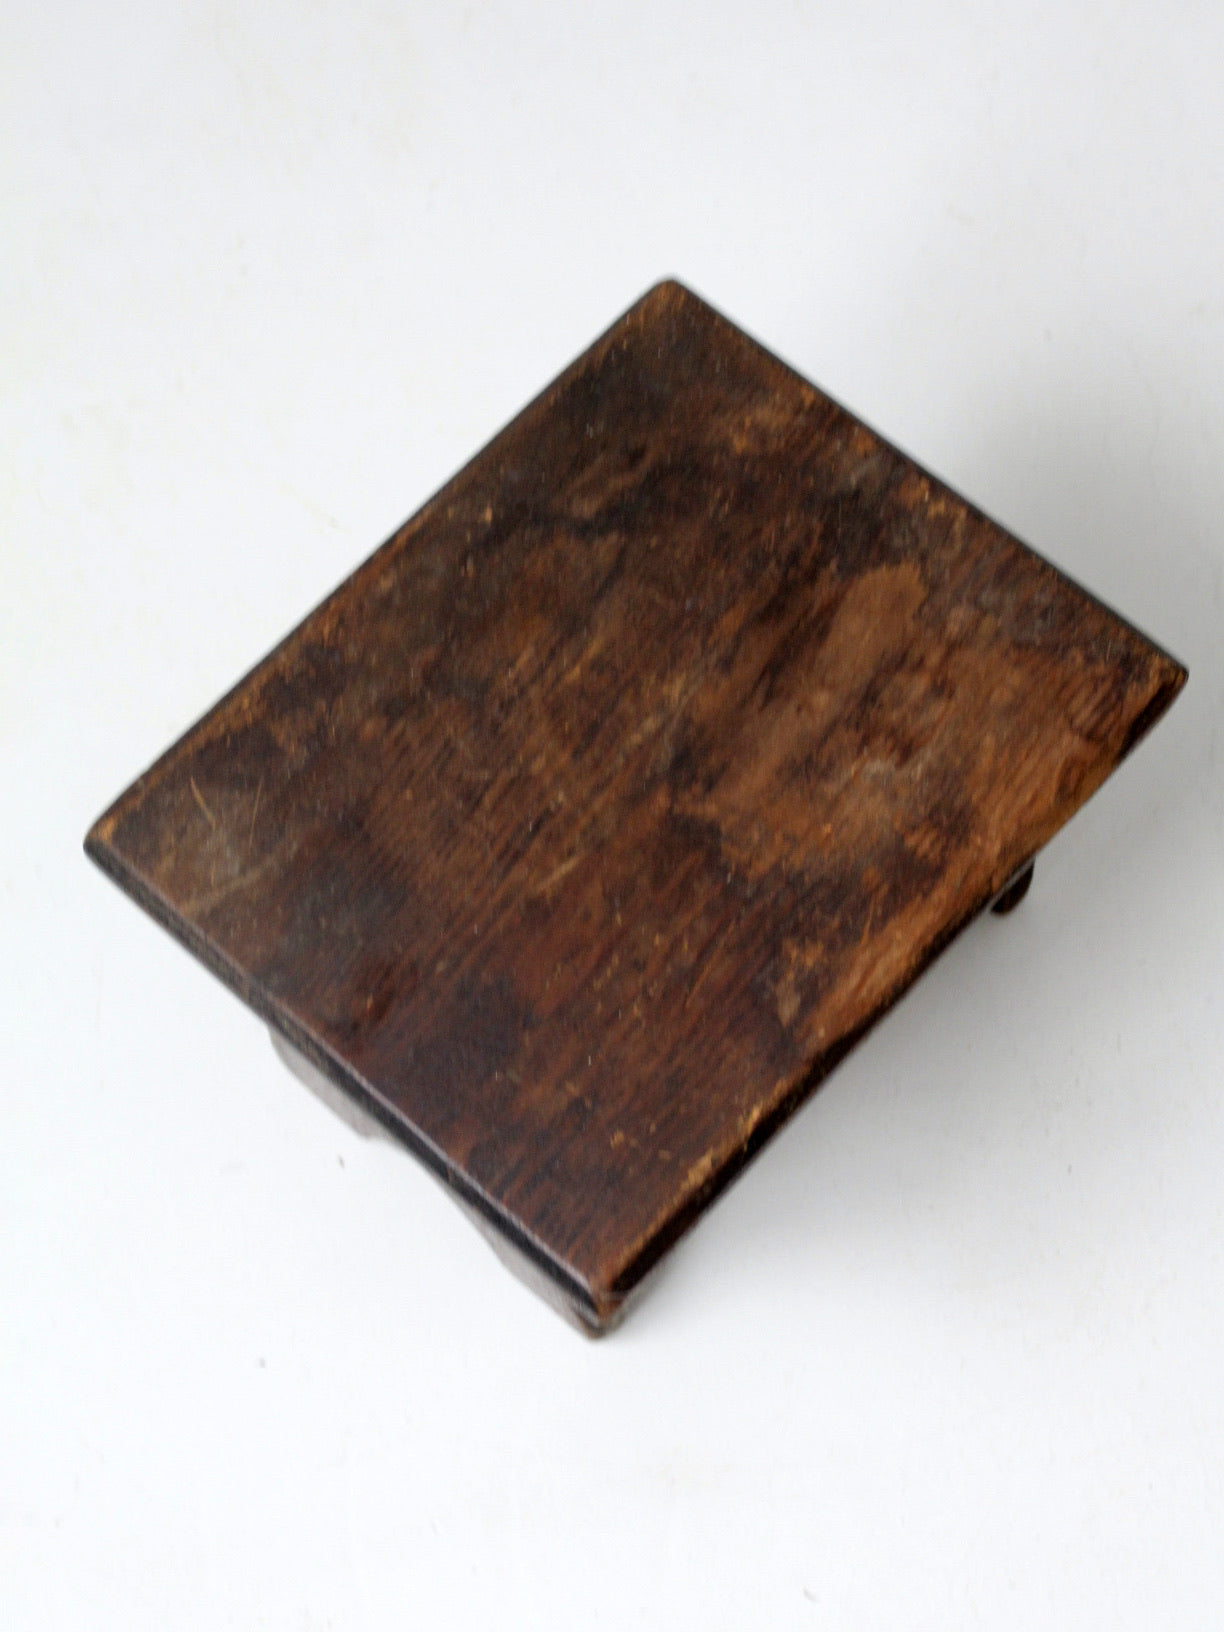 antique wooden footstool